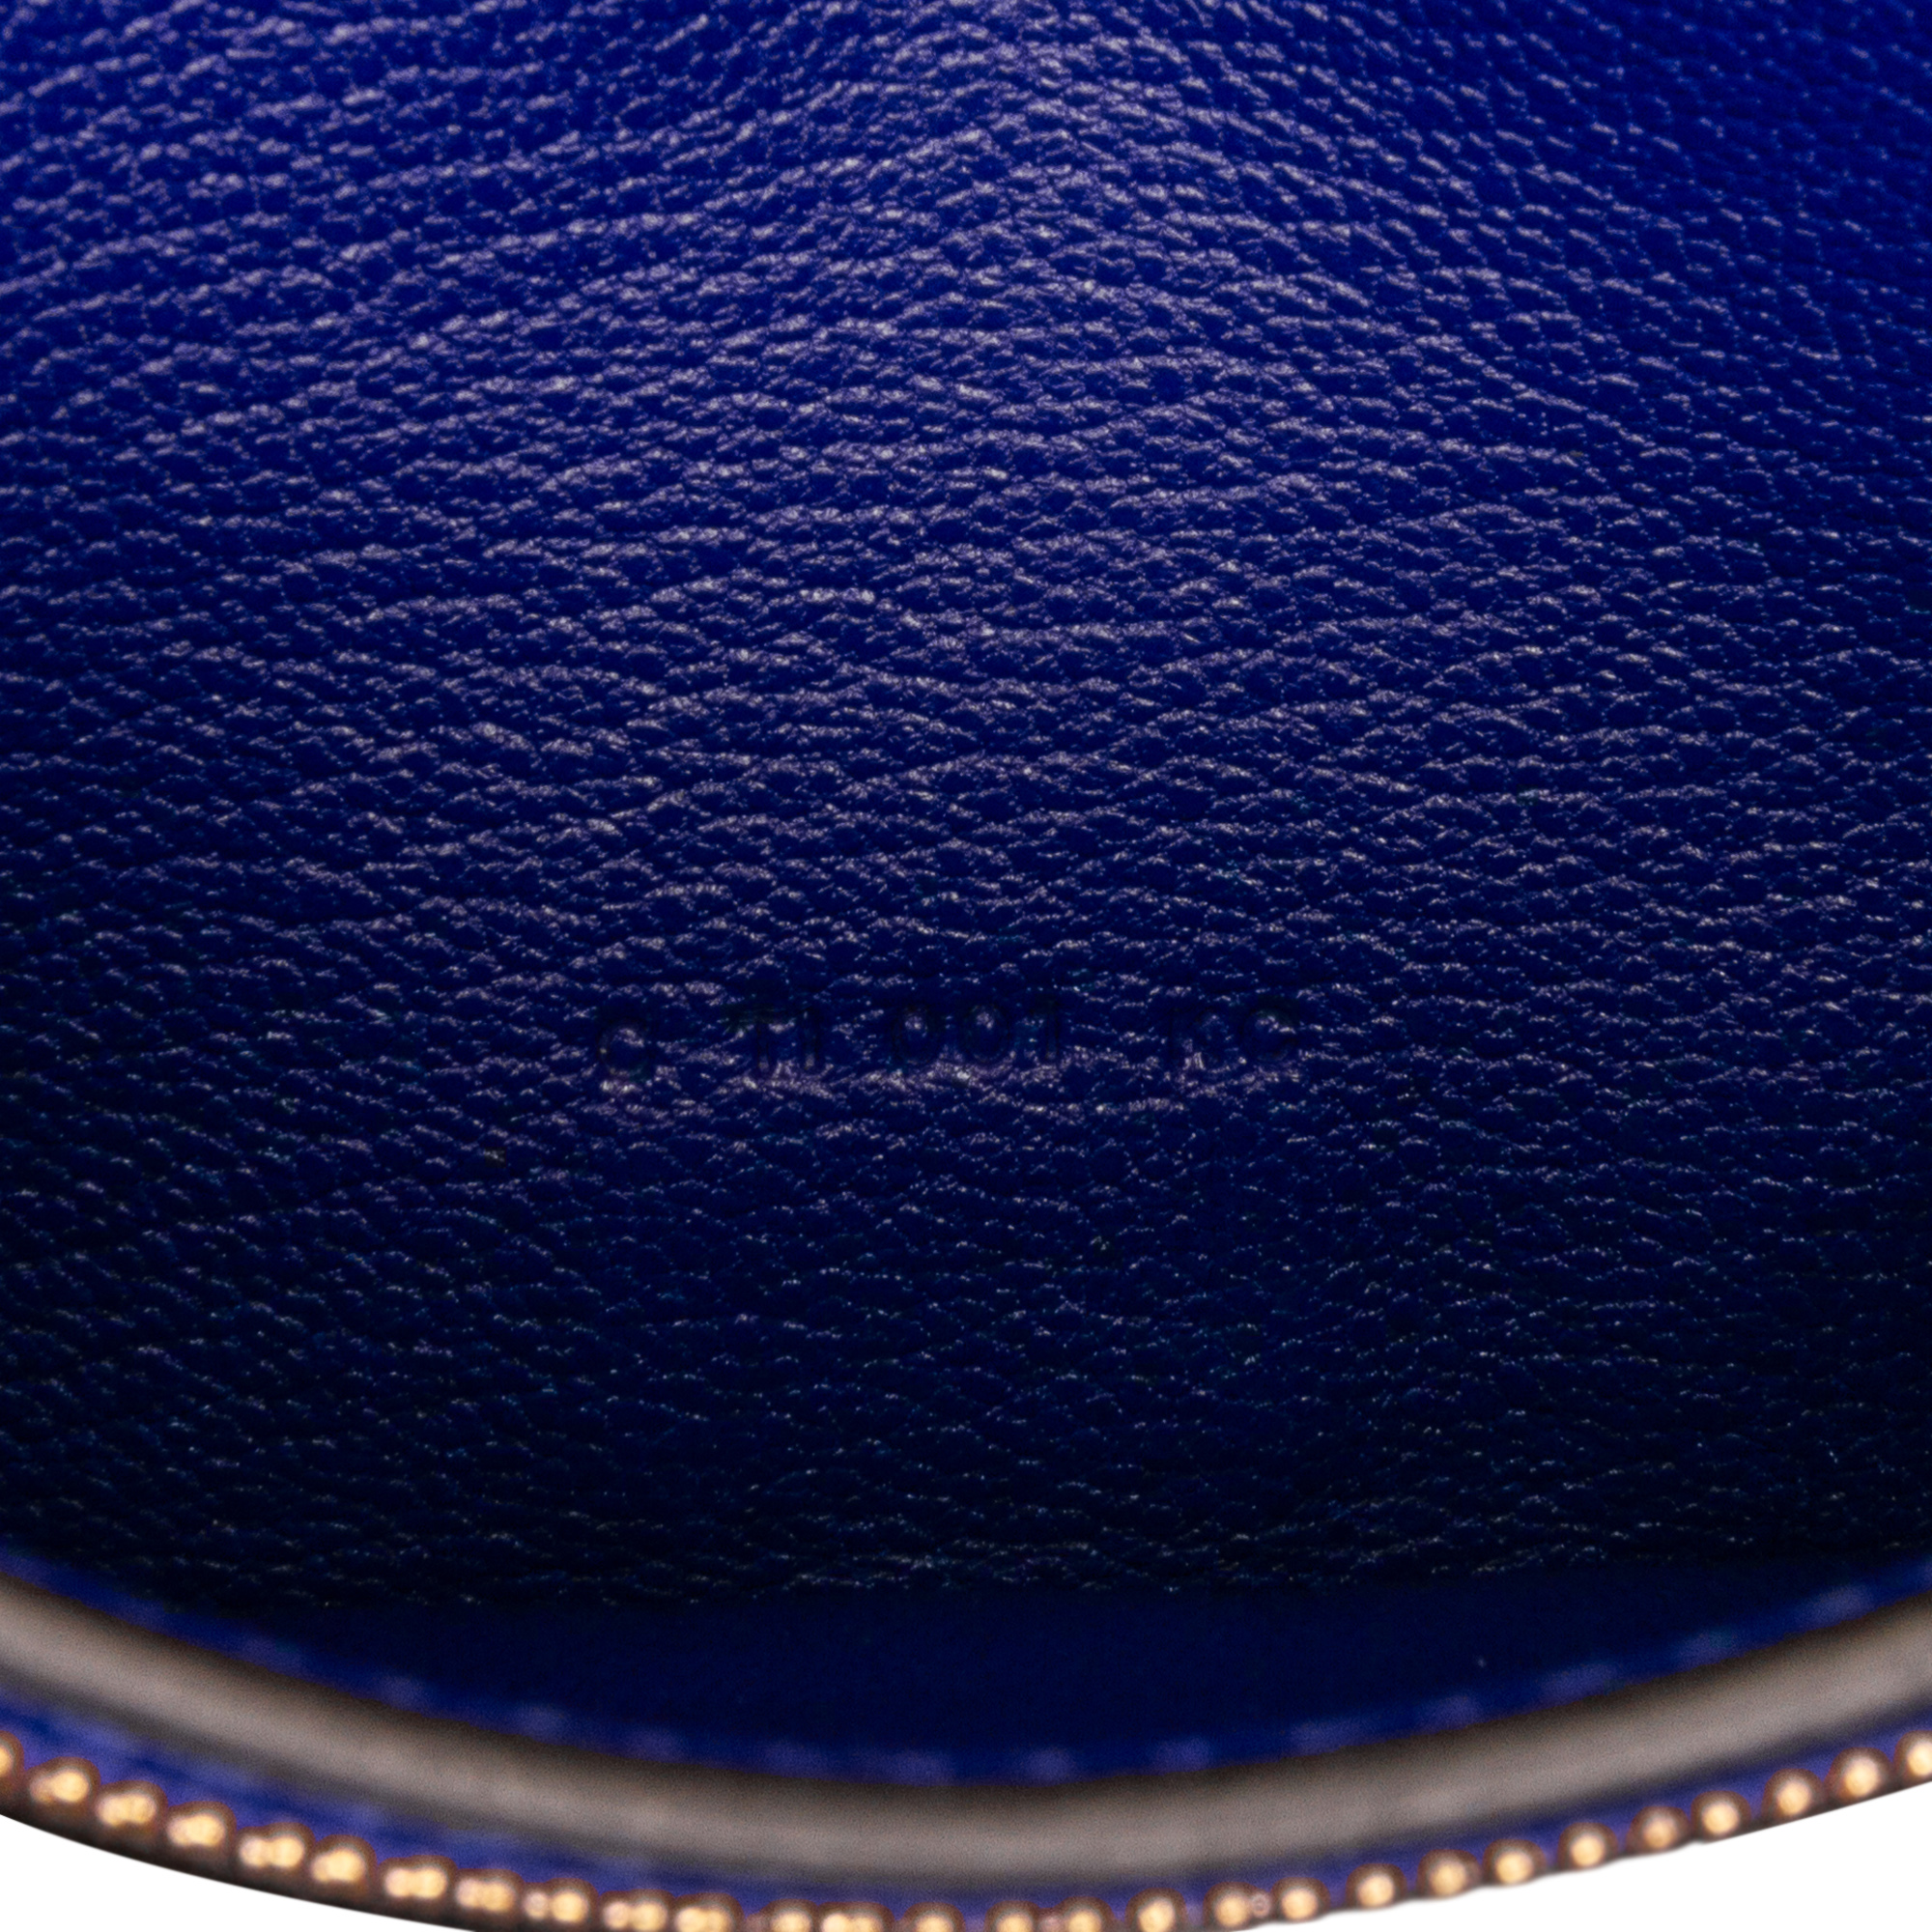 Hermes Blue Leather Bearn Soufflet Wallet